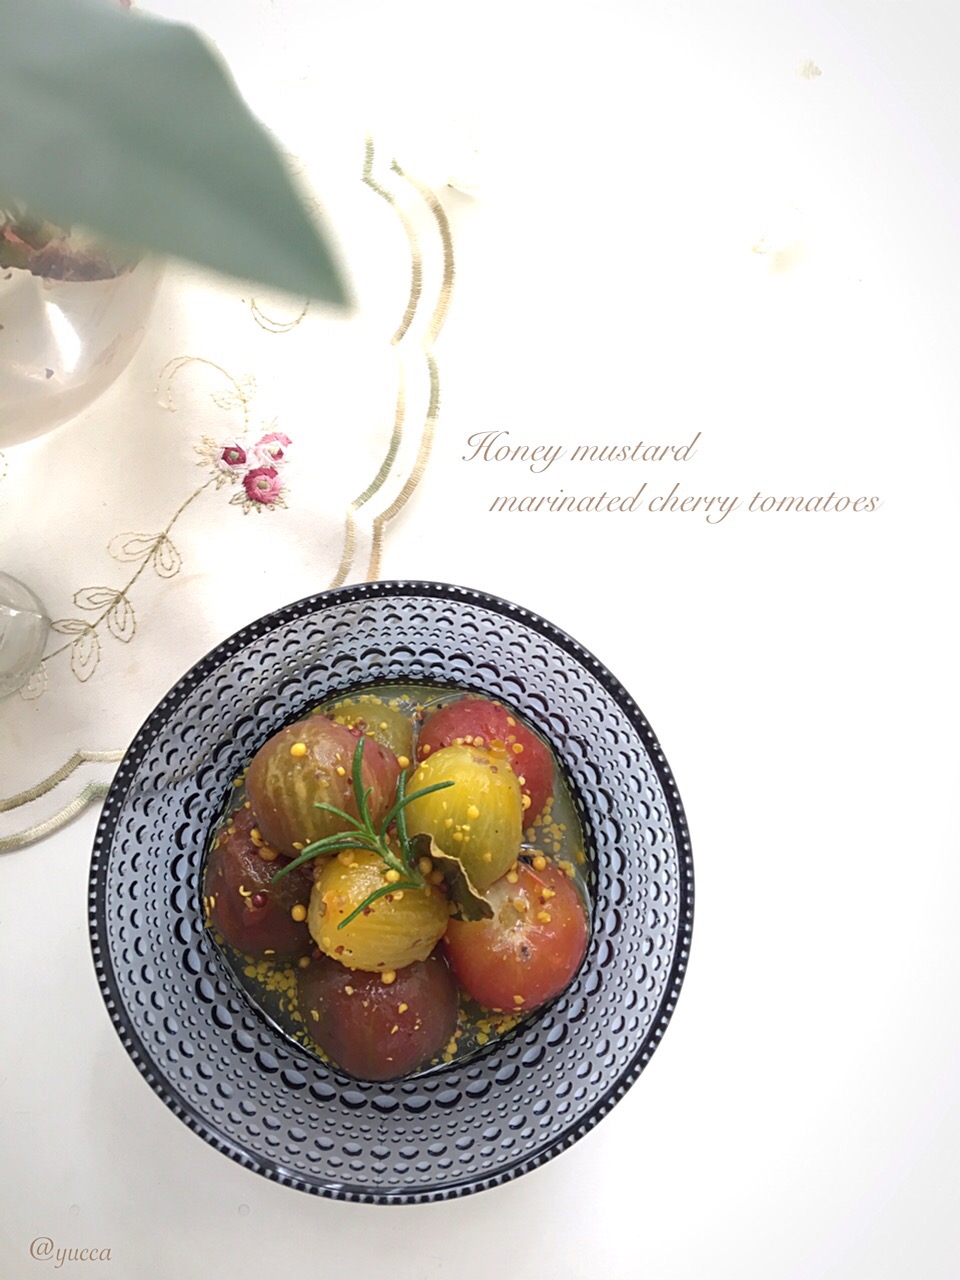 izoomさんの料理 プチトマトのハニーマスタードマリネ 【Honey mustard marinated cherry tomatoes】